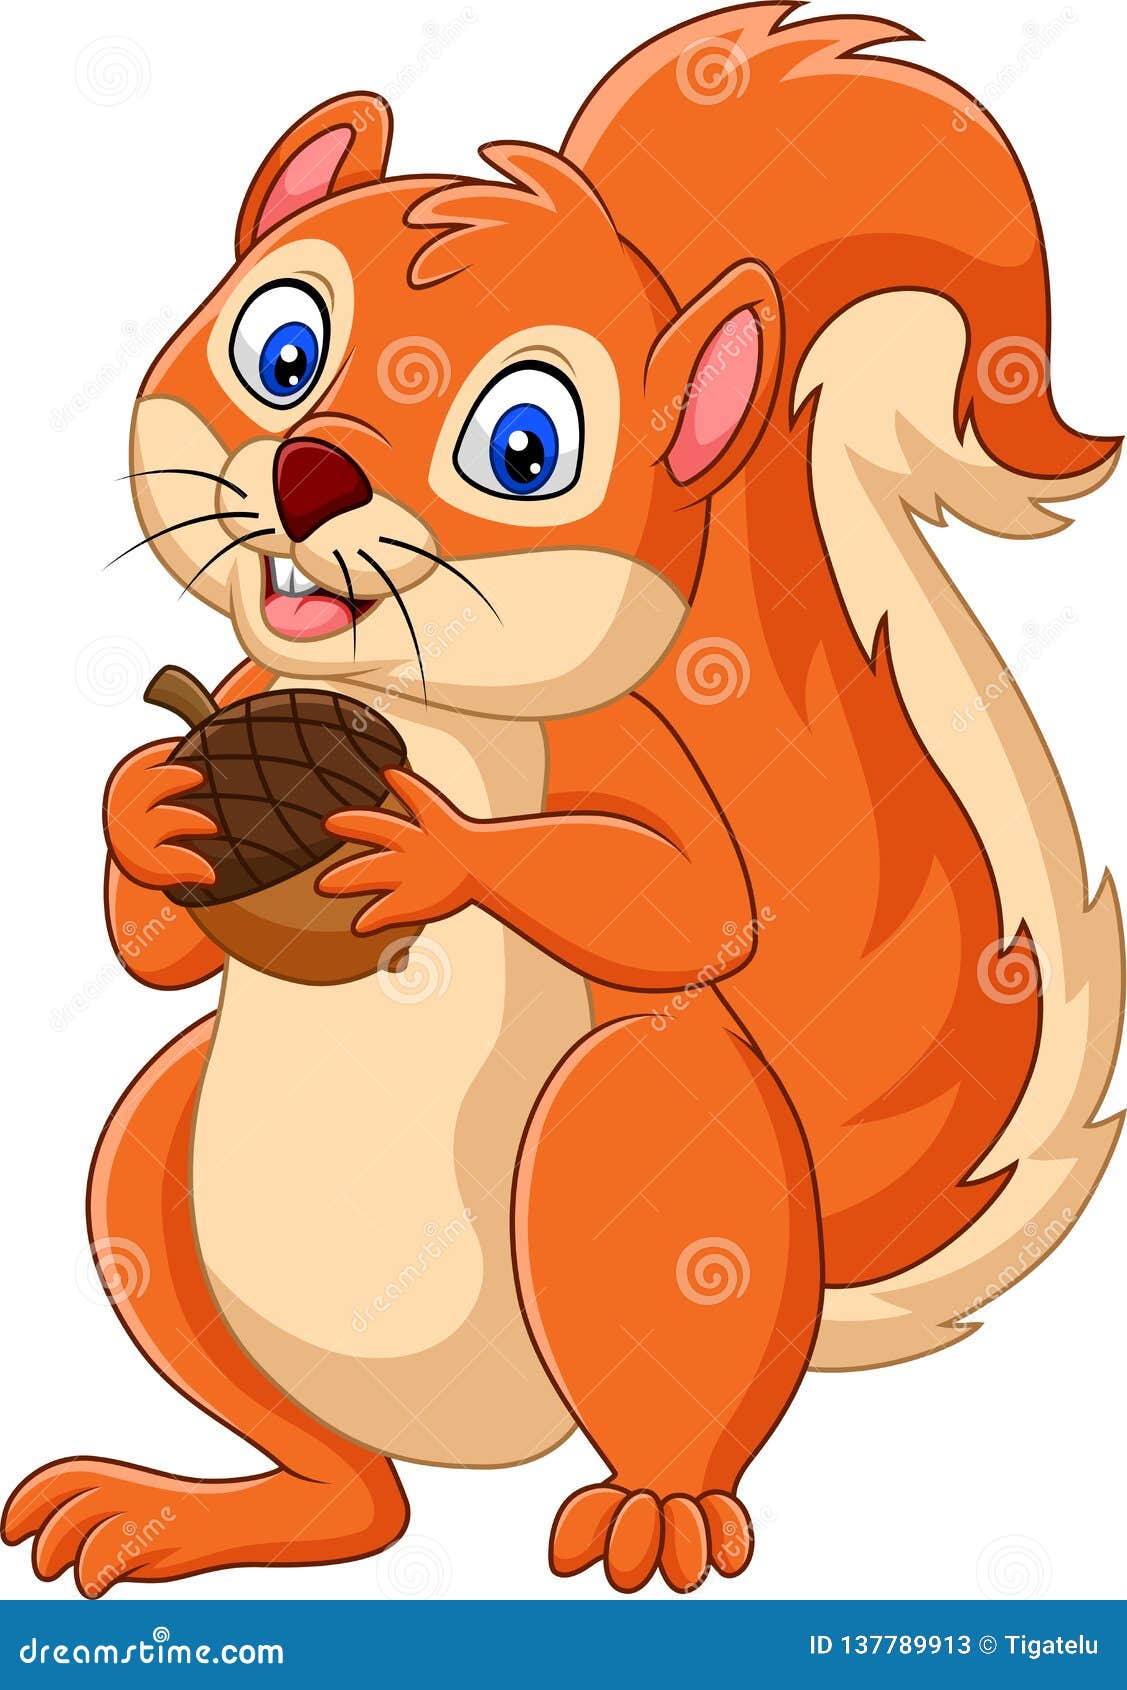 Cartoon Squirrel Holding Nut Stock Vector - Illustration of fluffy ...